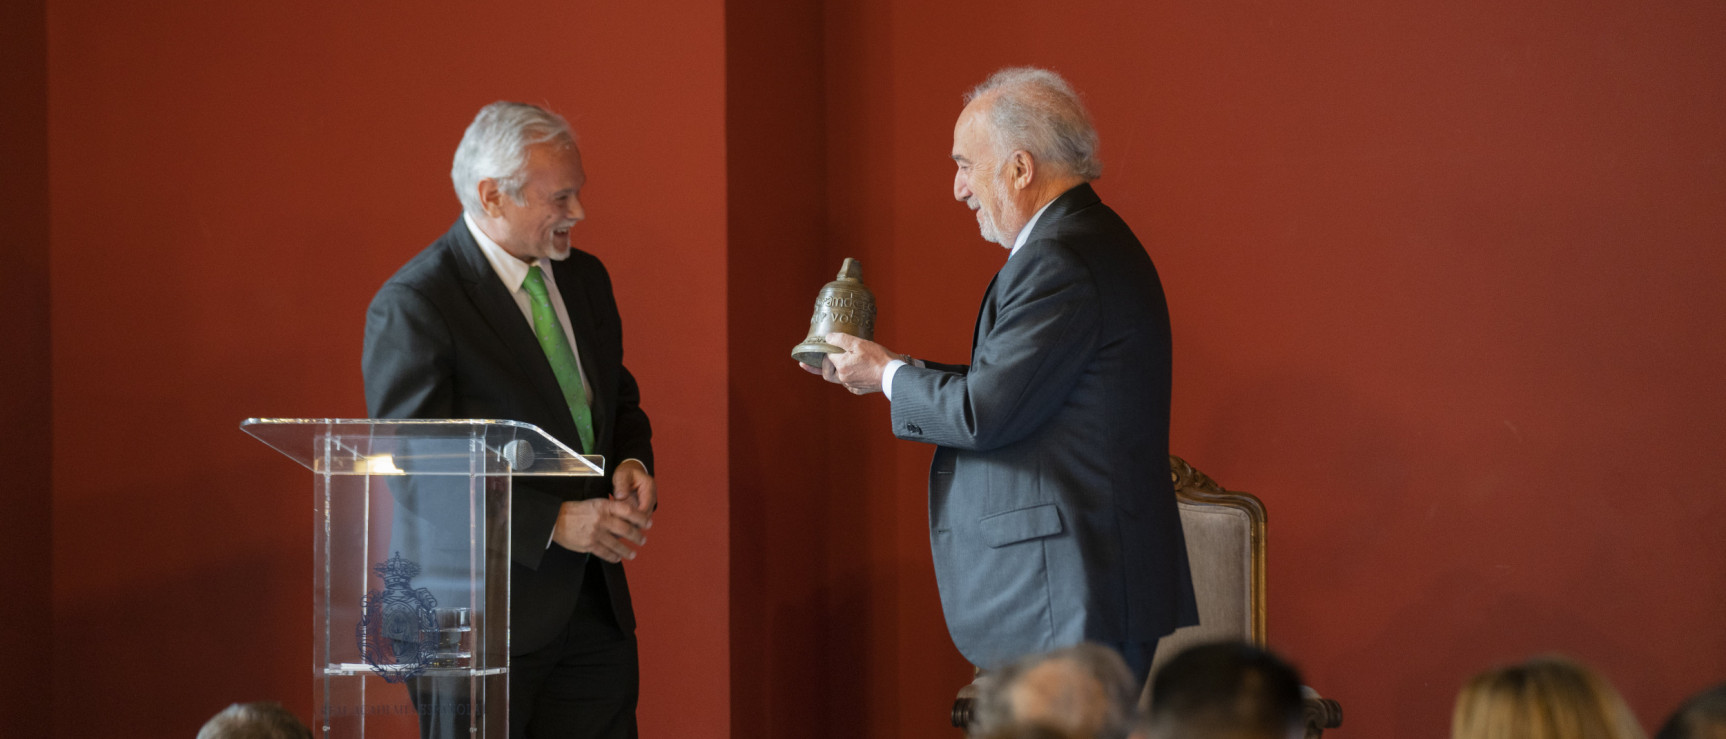 El director de la RAE, Santiago Muñoz Machado, recibe un regalo de manos del presidente de la Unión Iberoamericana de Colegios y Agrupaciones de Abogados, don Carlos Andreucci (foto: RAE).